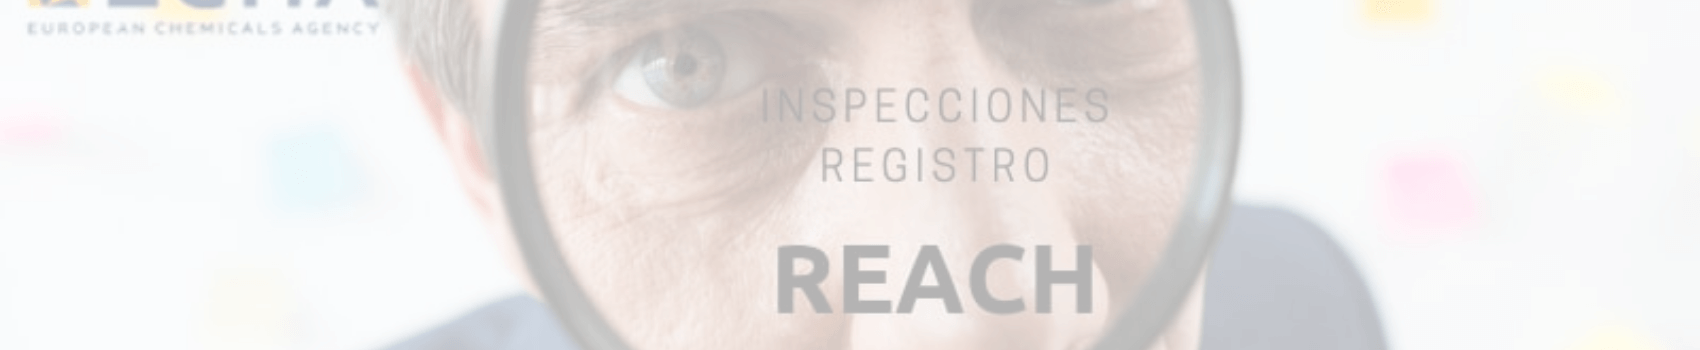 Inspecciones registro REACH